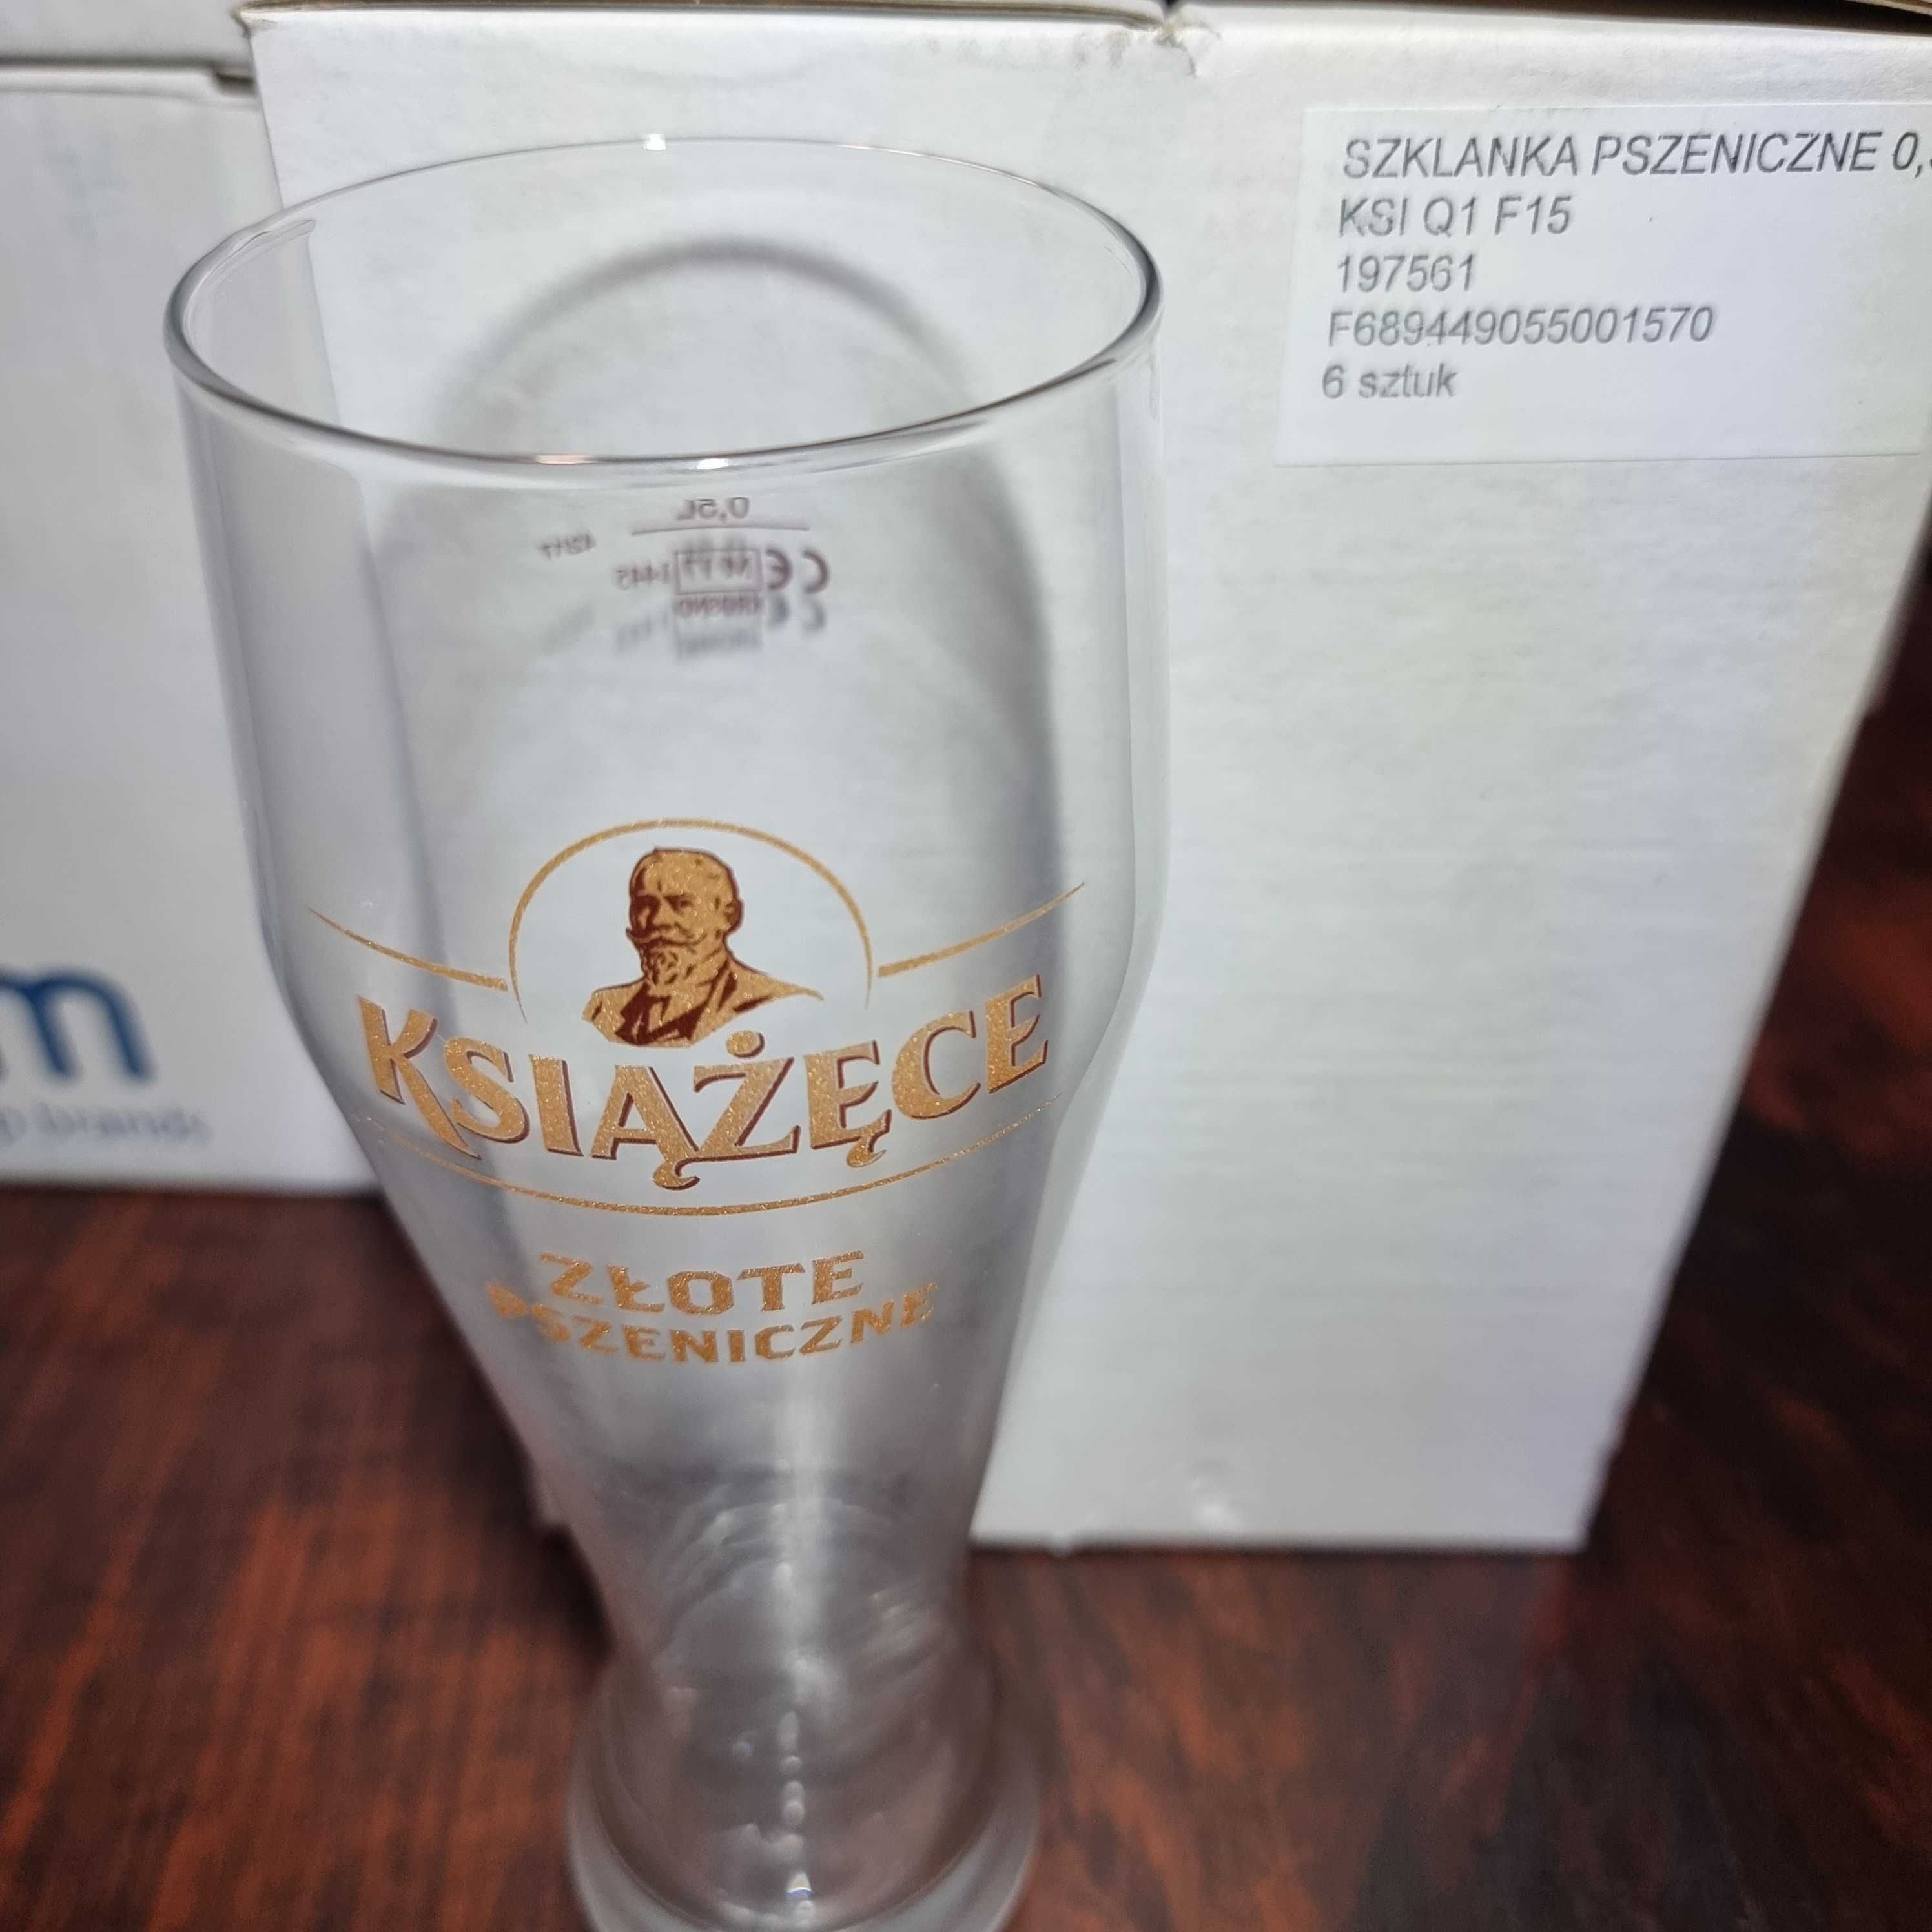 KSIŻĄŻĘCE nowe kolekcjonerskie szklanki do piwa, nieużywane